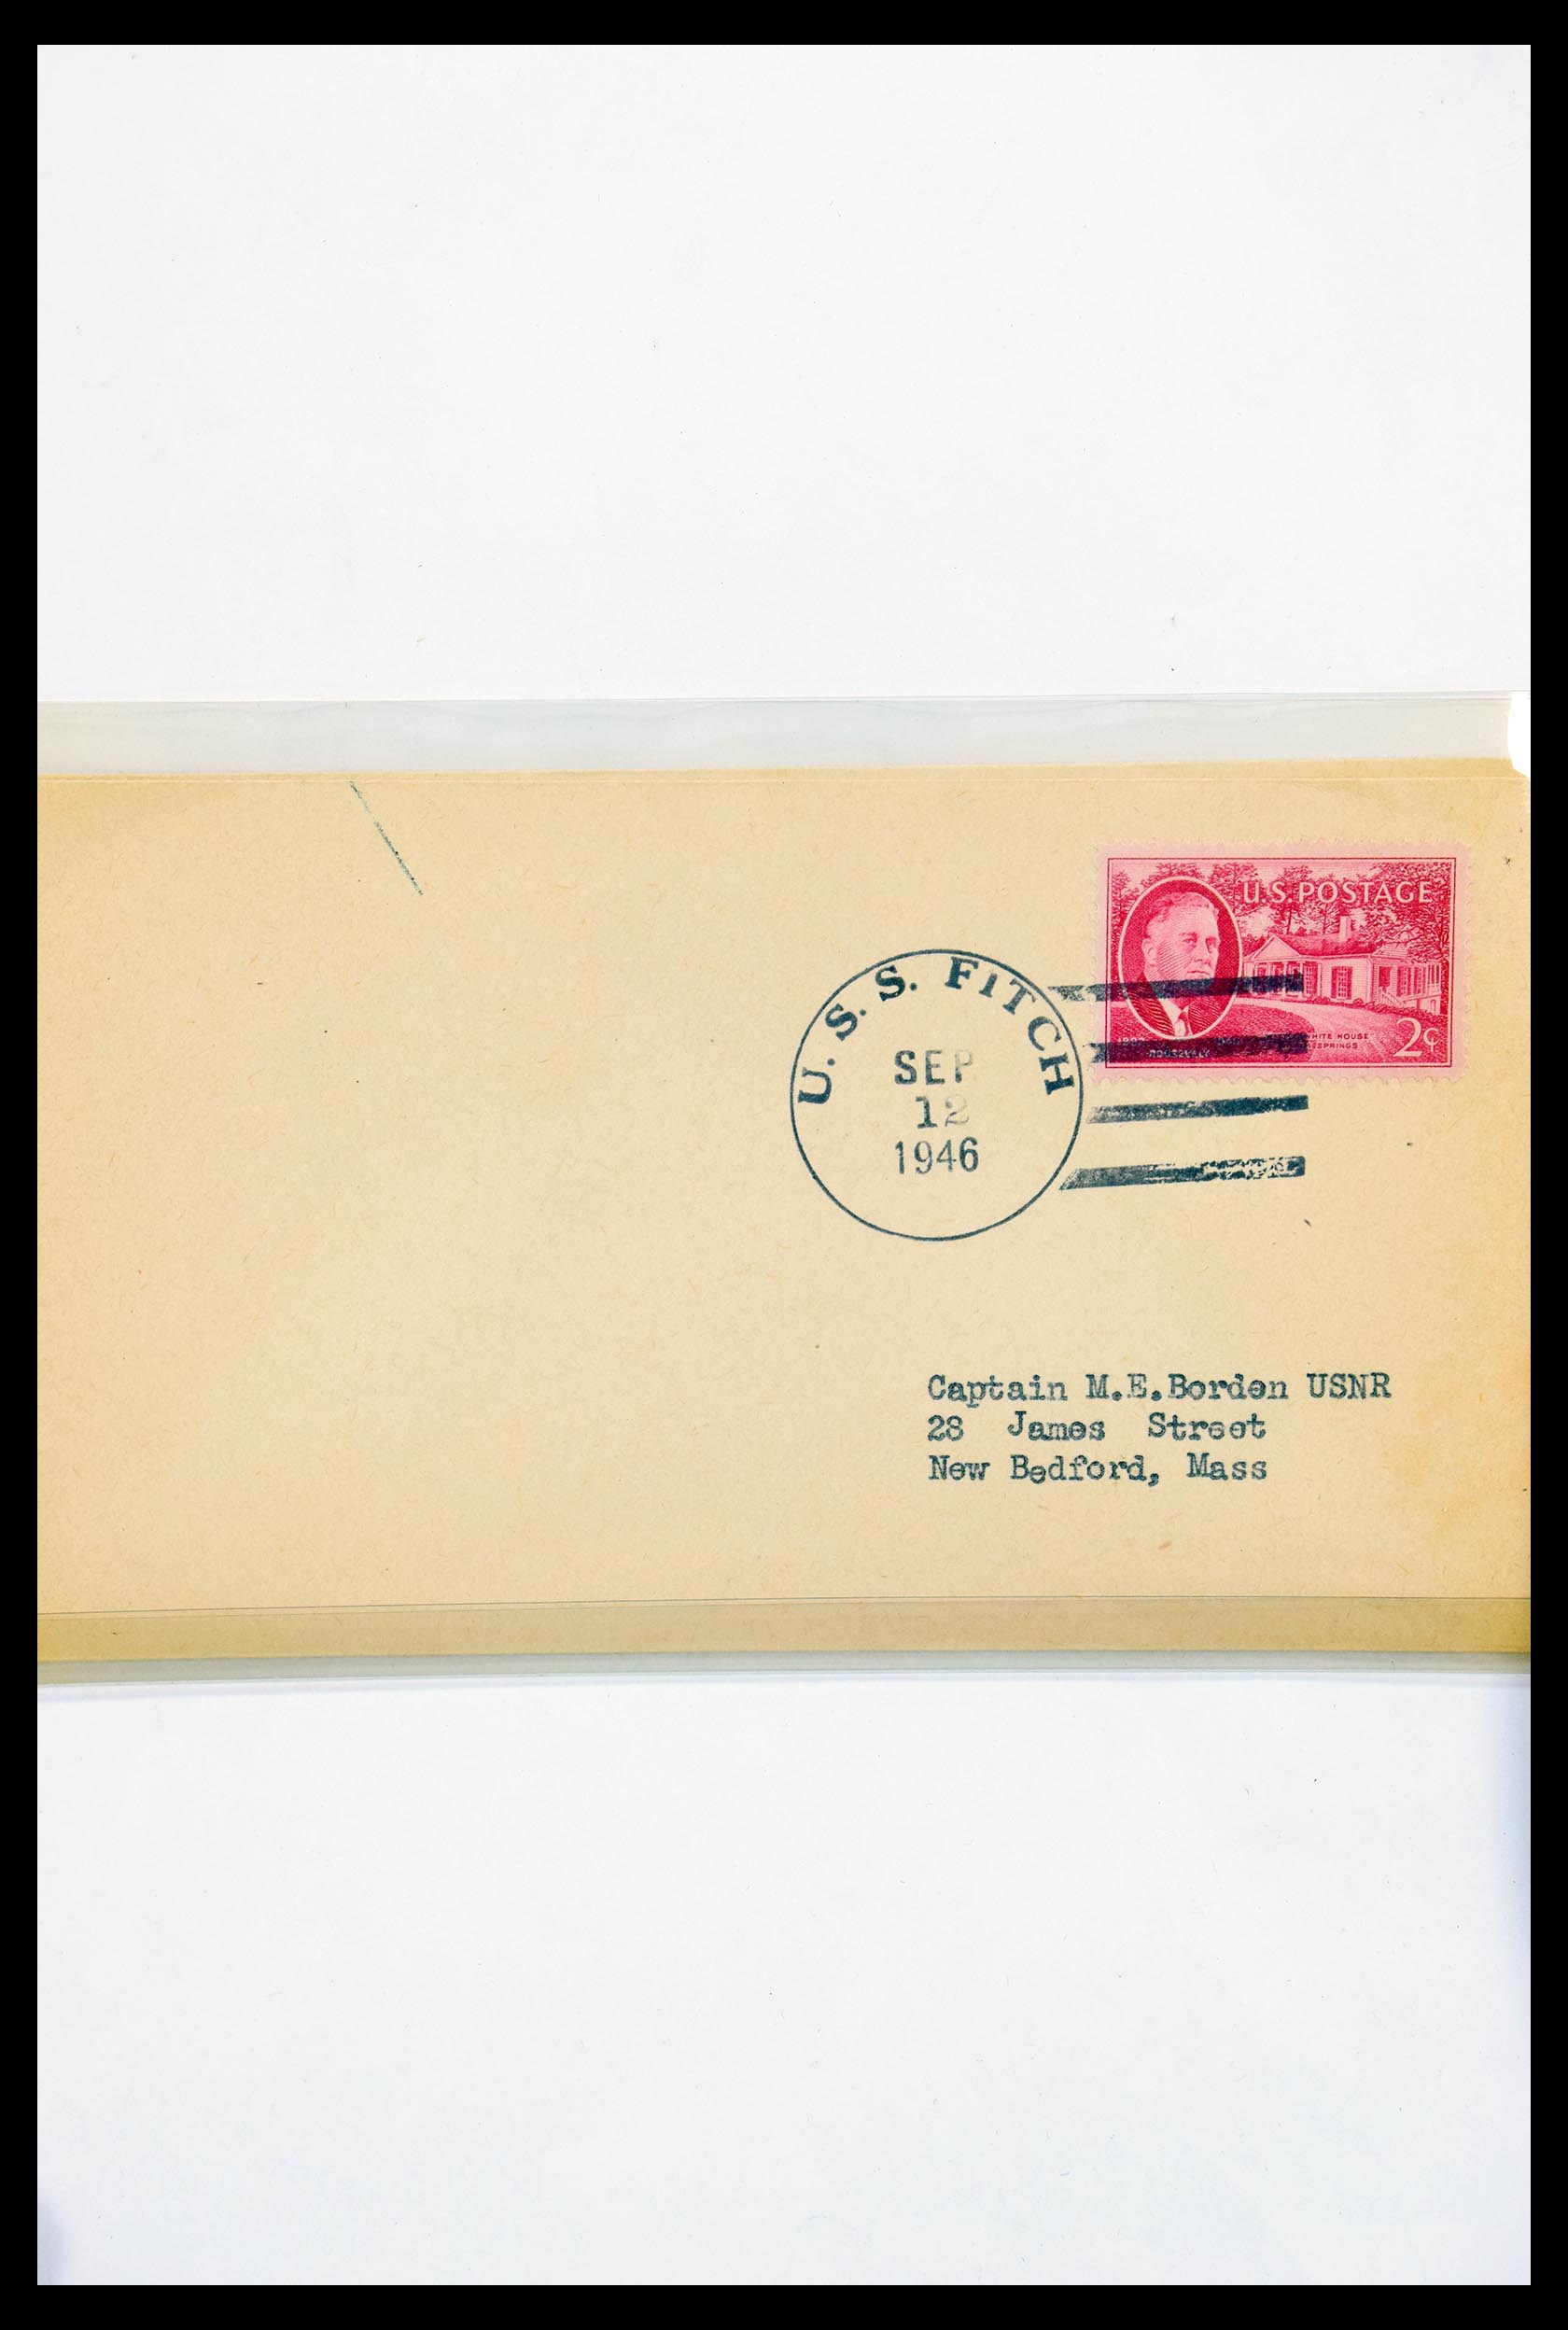 30341 315 - 30341 USA scheepspost brieven 1930-1970.